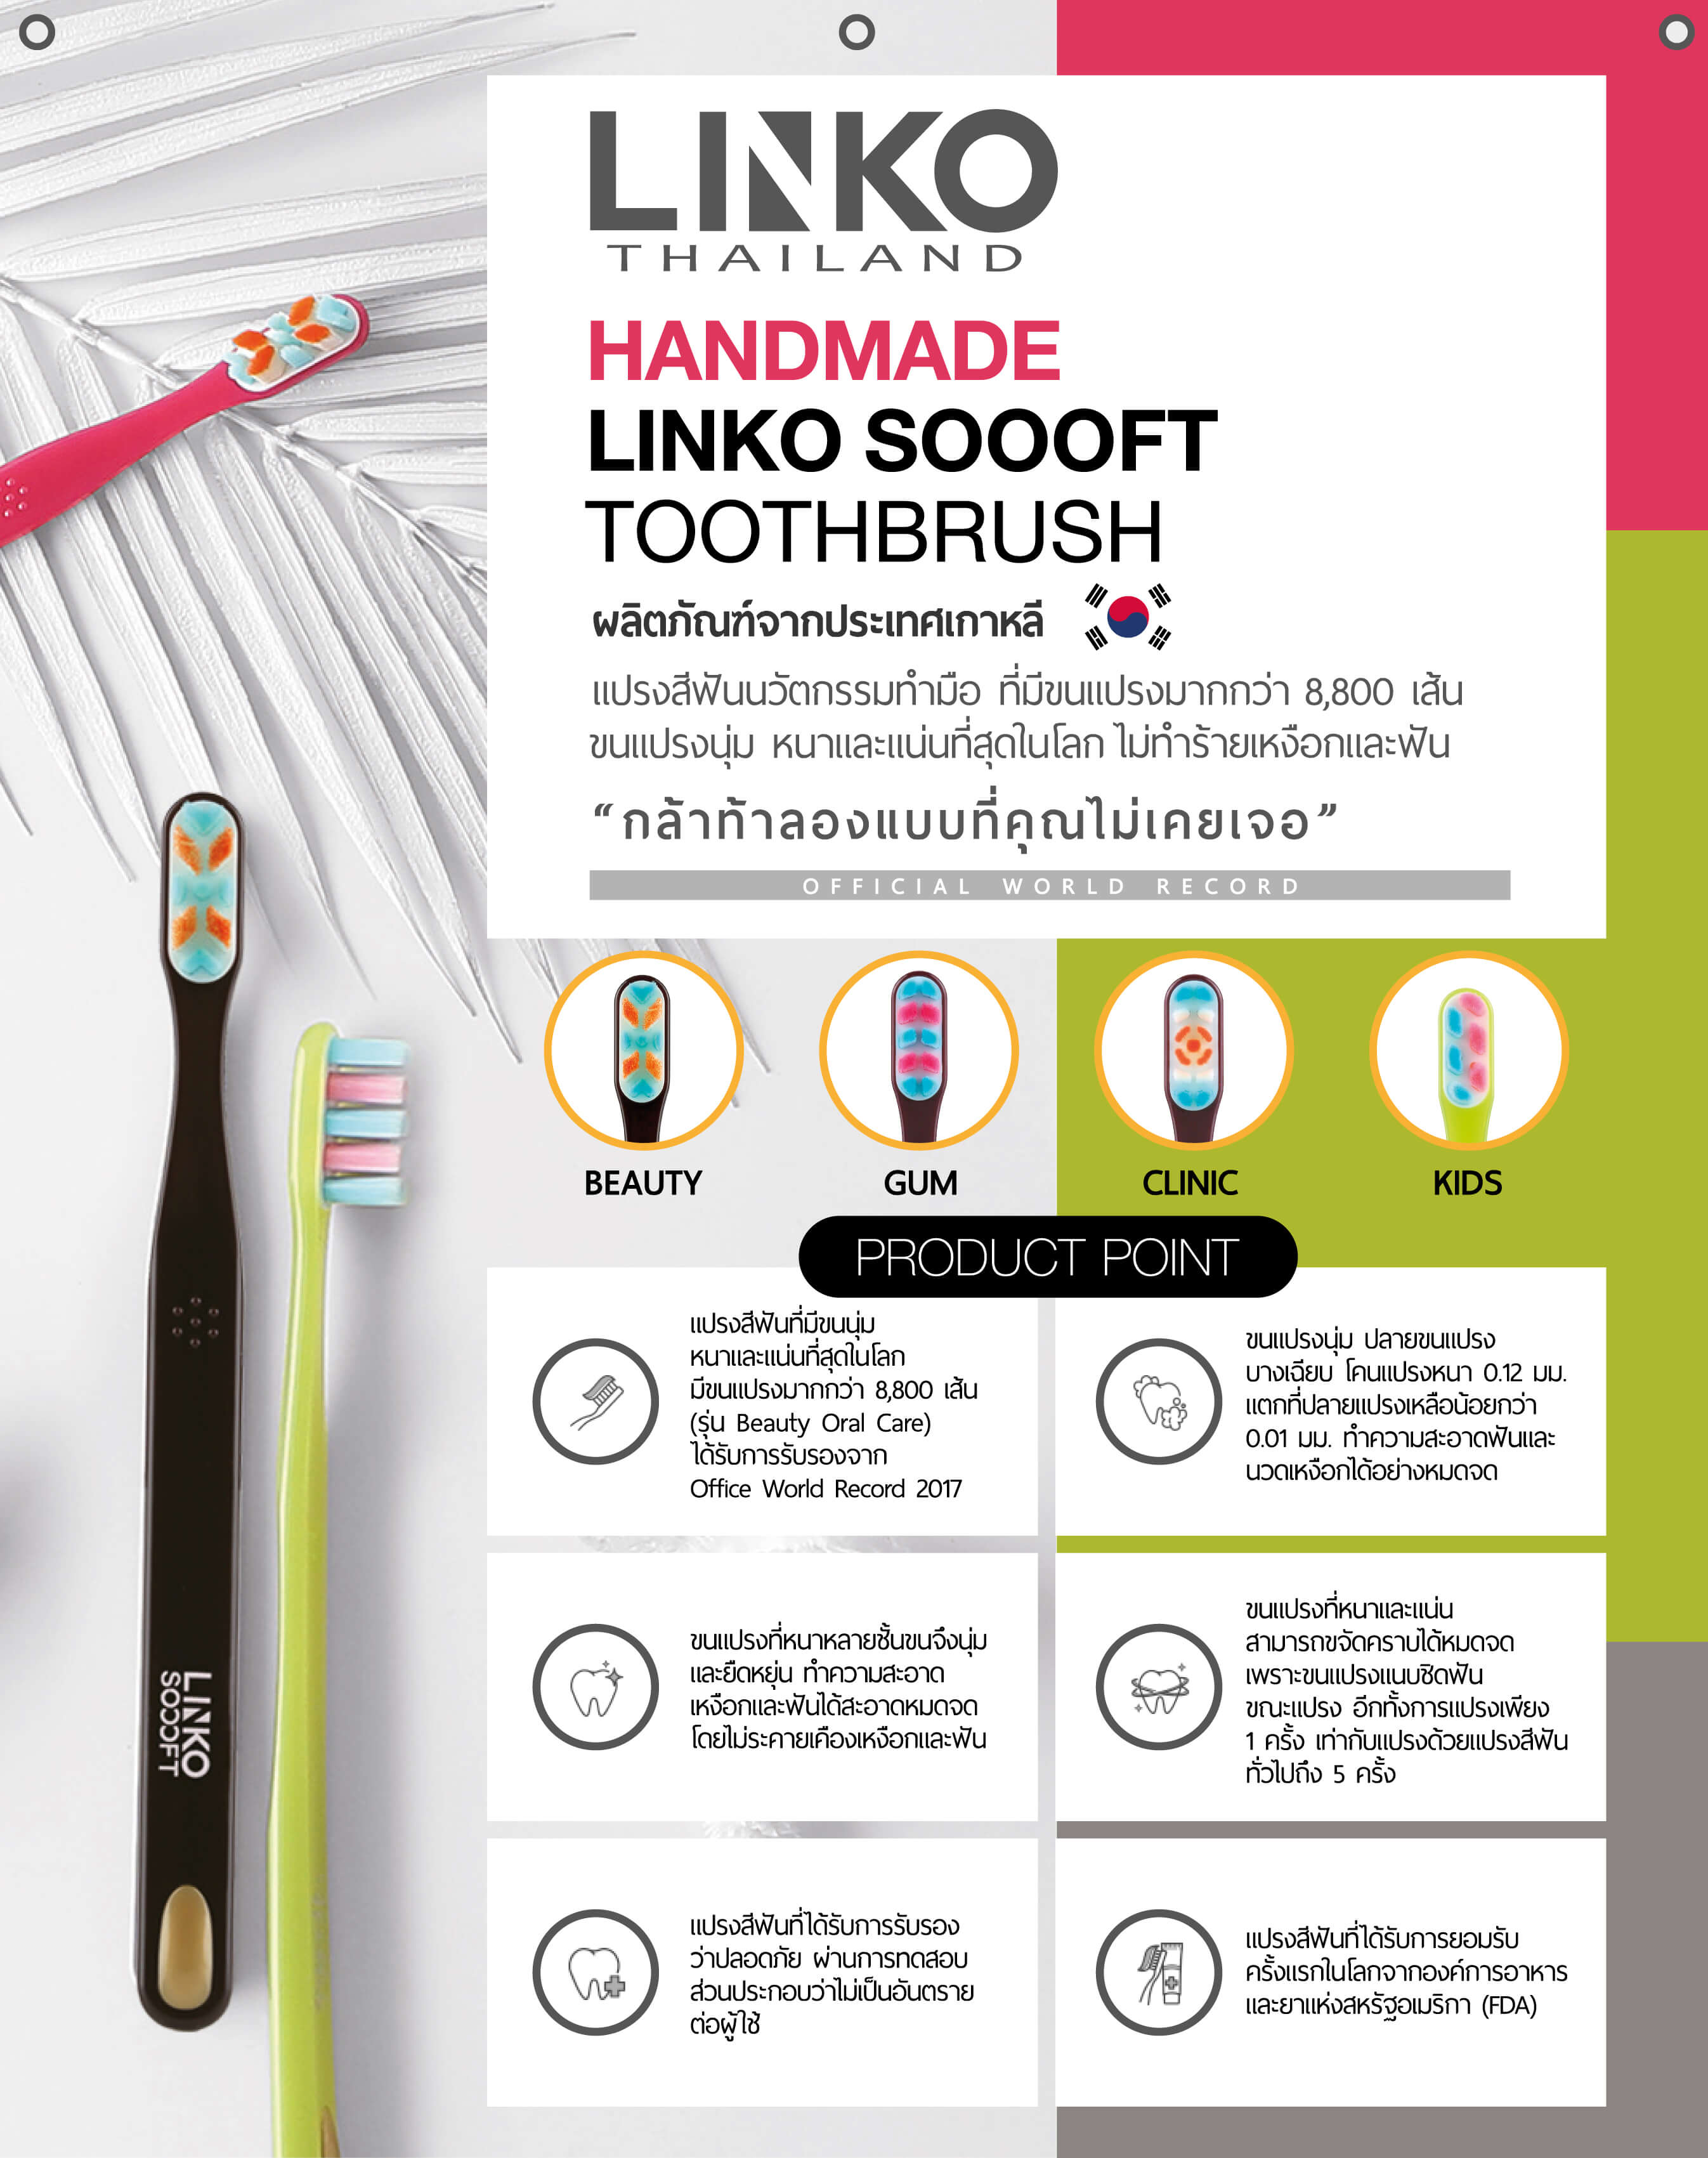 Linko Soooft แบรนด์จากประเทศเกาหลีแปรงสีฟันนวัตกรรมทำมือ ที่มีขนแปรงมากกว่า 8,800 เส้นขนแปรงนุ่ม หนาและแน่นที่สุดในโลก ไม่ทำร้ายเหงือกและฟัน ”กล้าท้าลองแบบที่คุณไม่เคยเจอ“ เท่ากับแปรงด้วยแปรงสีฟันทั่วไป 5 ครั้ง   แปรงสีฟันที่ได้รับการยอมรับครั้งแรกของโลกจากองค์การอาหารและยาจากสหรัฐอเมริกา  (FDA) 